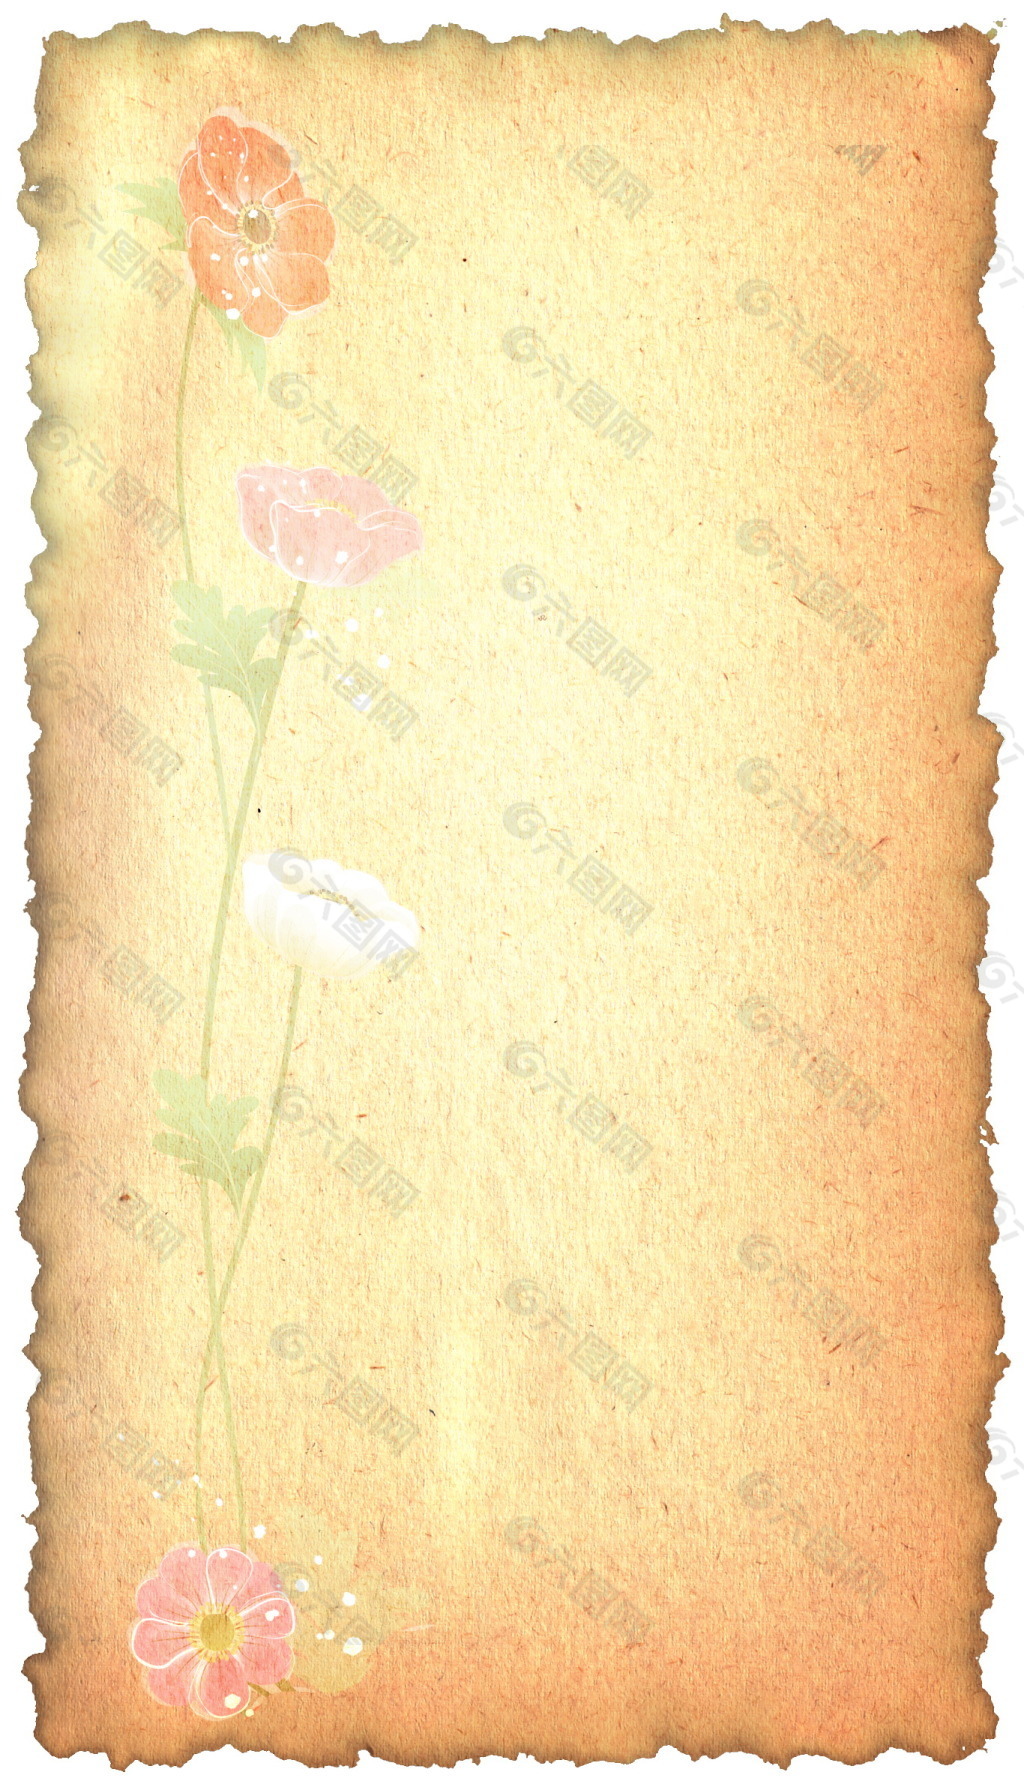 怀旧纸张花卉背景